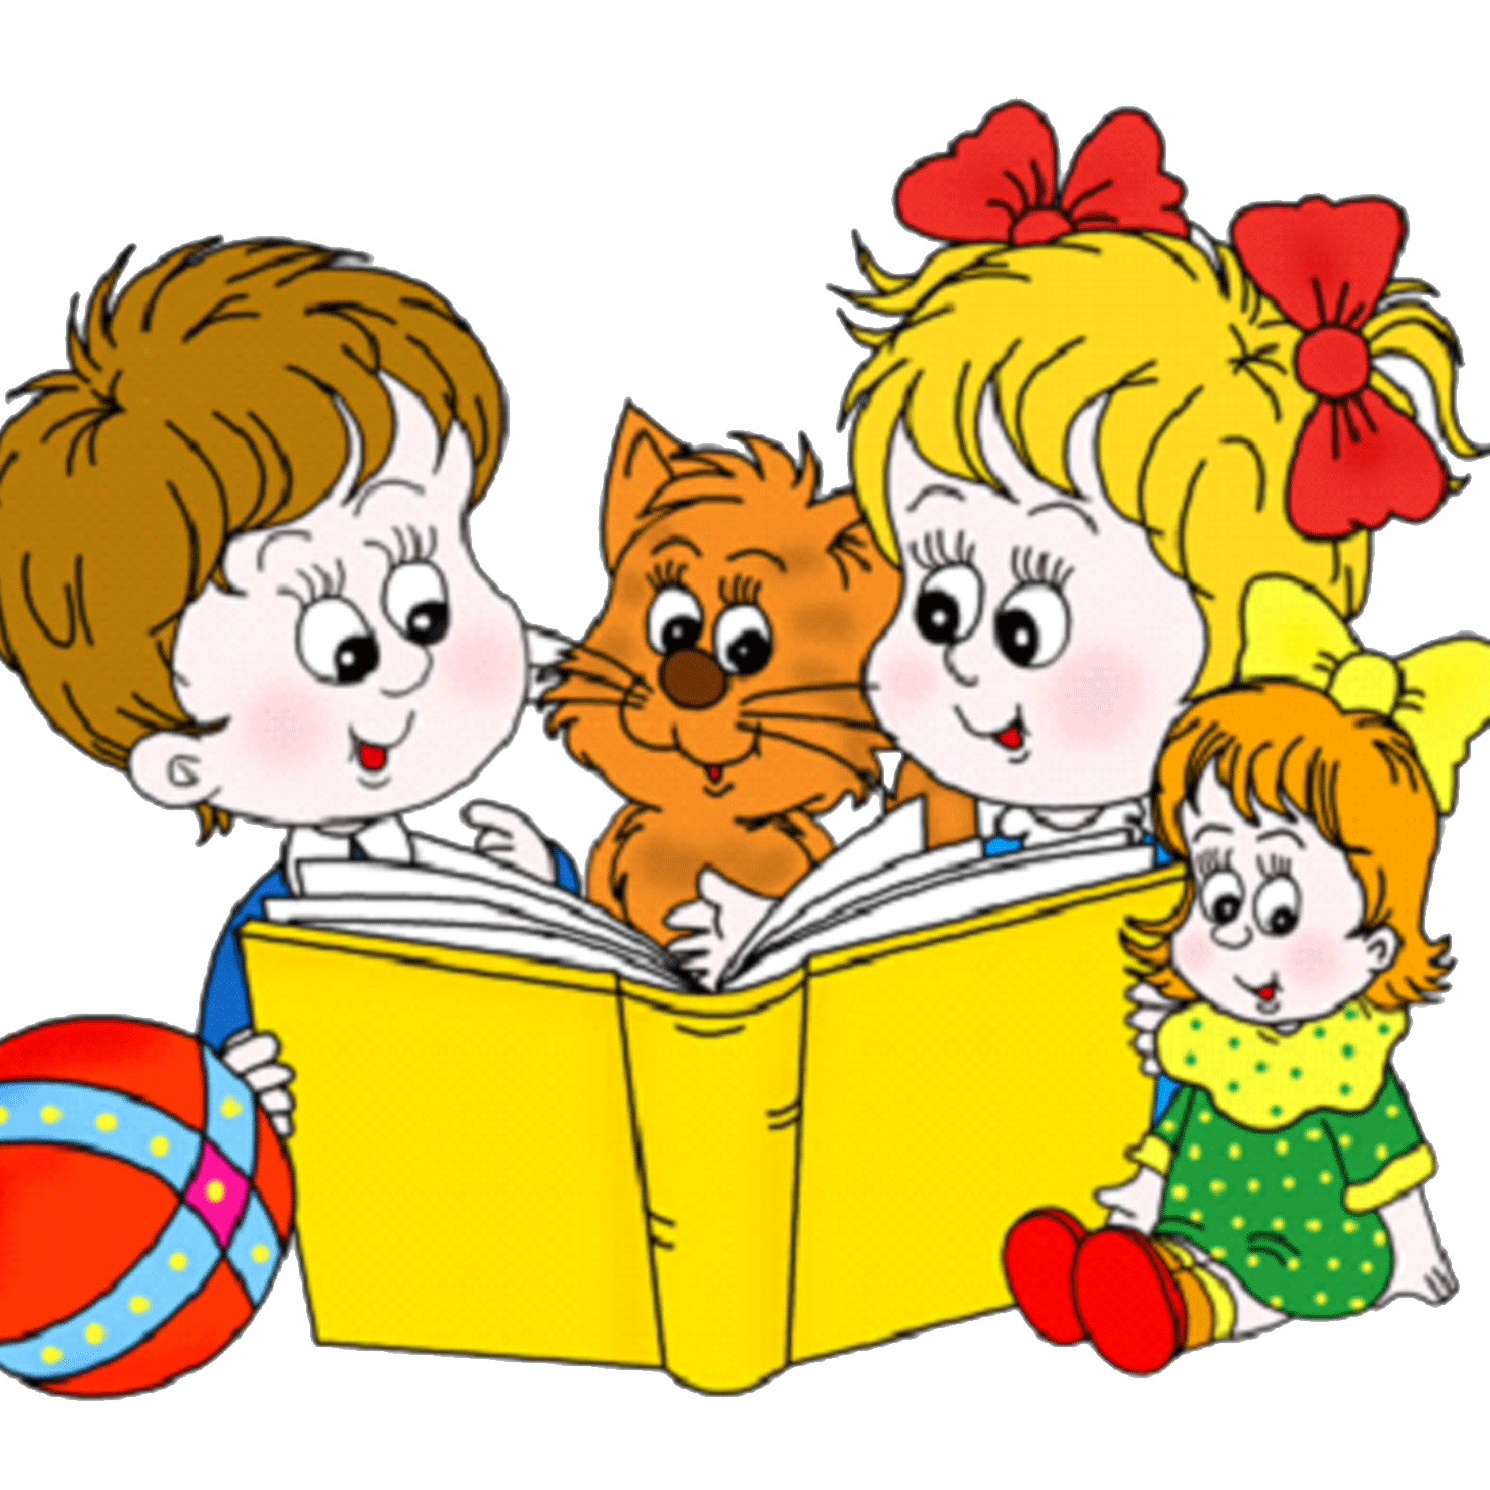 2 Апреля Международный день детской книги